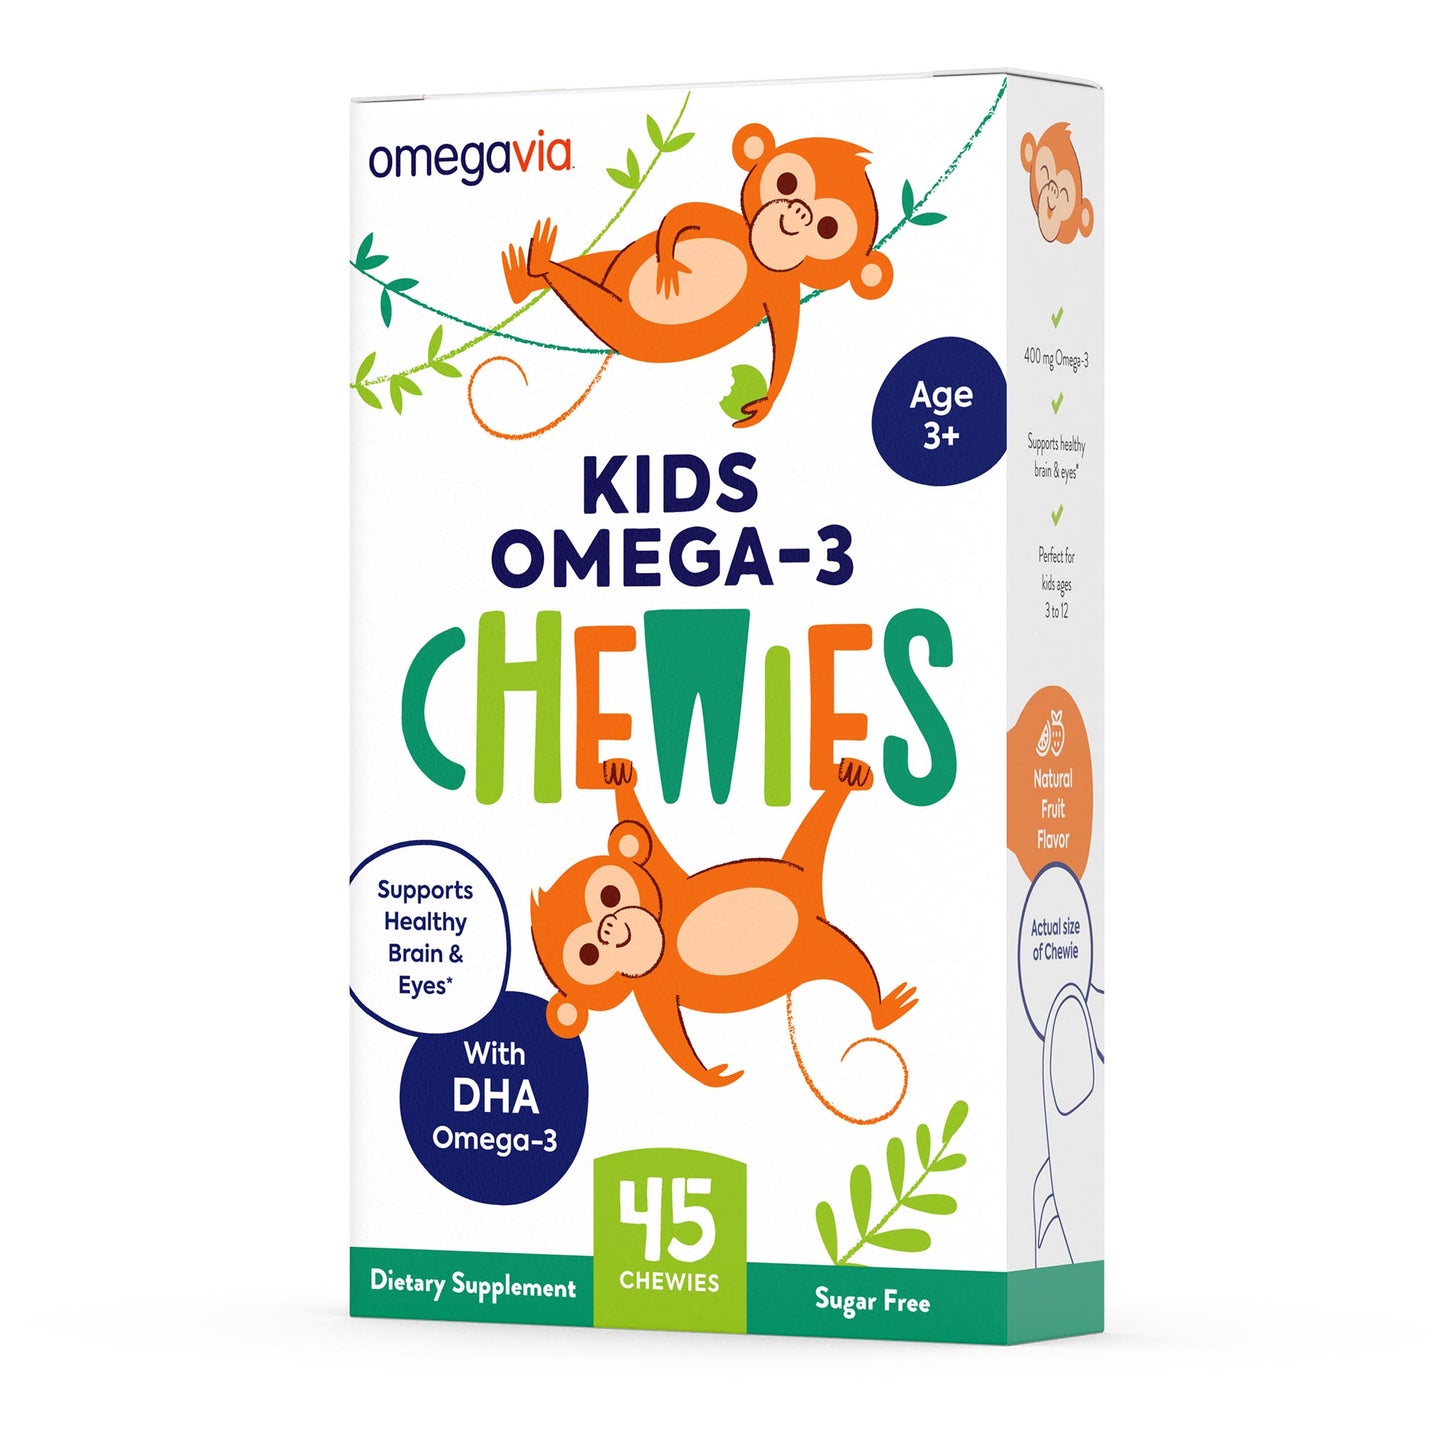 OmegaVia Kid's Omega-3 Chewies